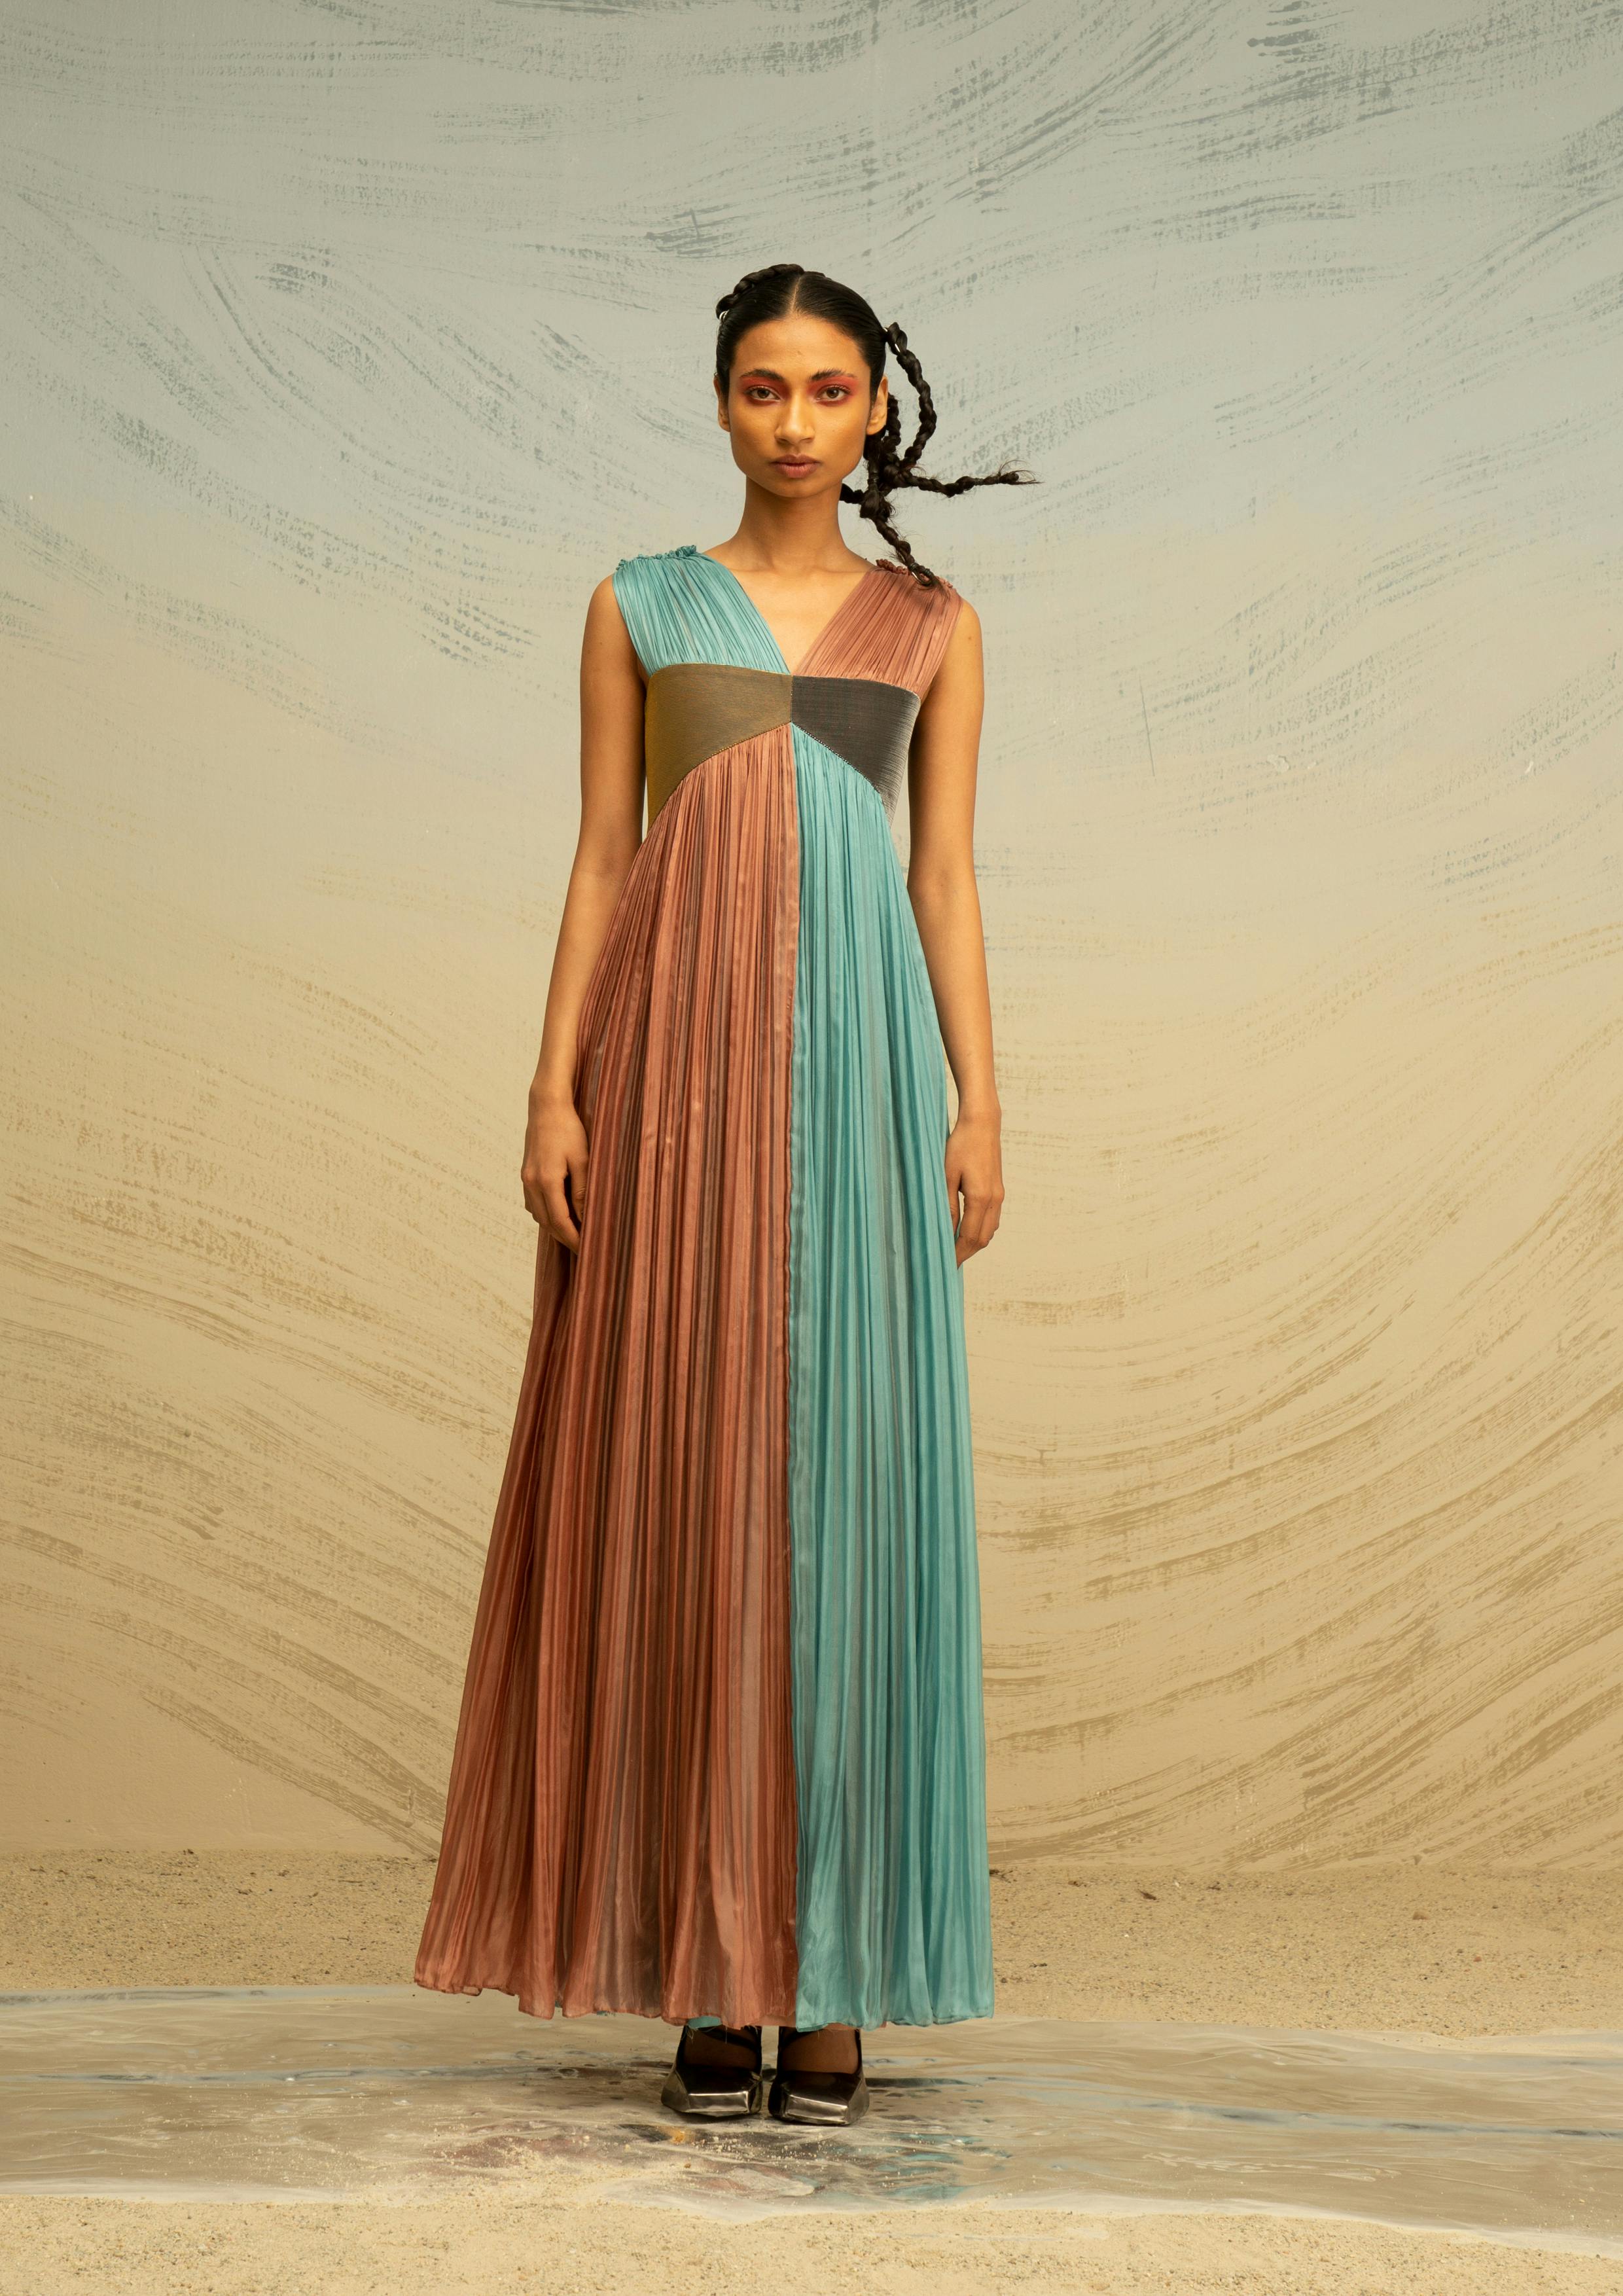 Gathered Chiffon Dress with Metallic Panels, a product by AKHL